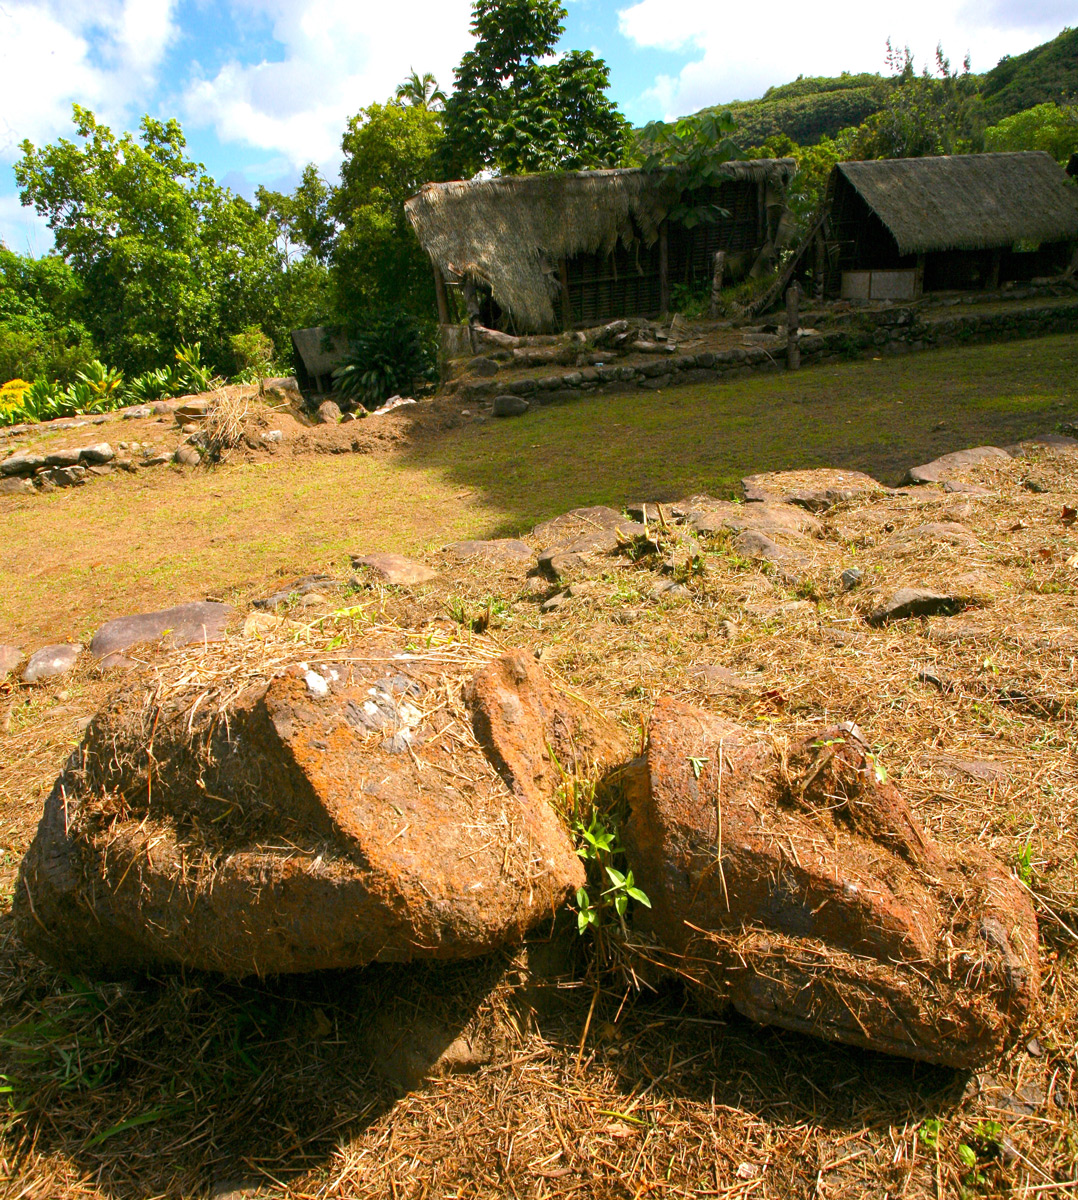 Le moai pascuan qui a été déplacé sur une plate-forme en hauteur et qui a été brisé. Il gît à terre, complètement abandonné.